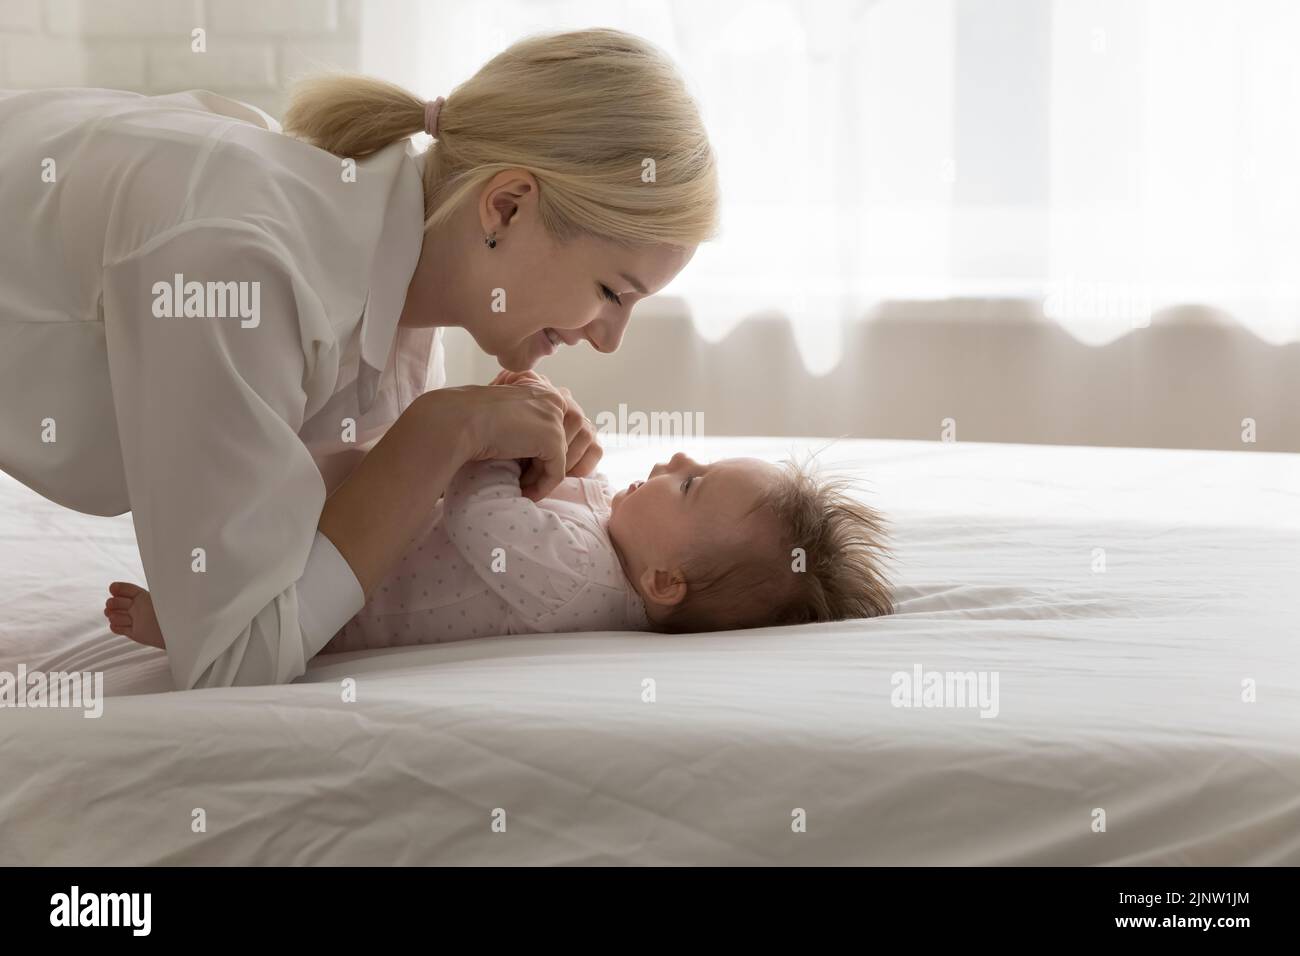 Madre Pase tiempo inestimable, momentos dulces con el bebé recién nacido Foto de stock